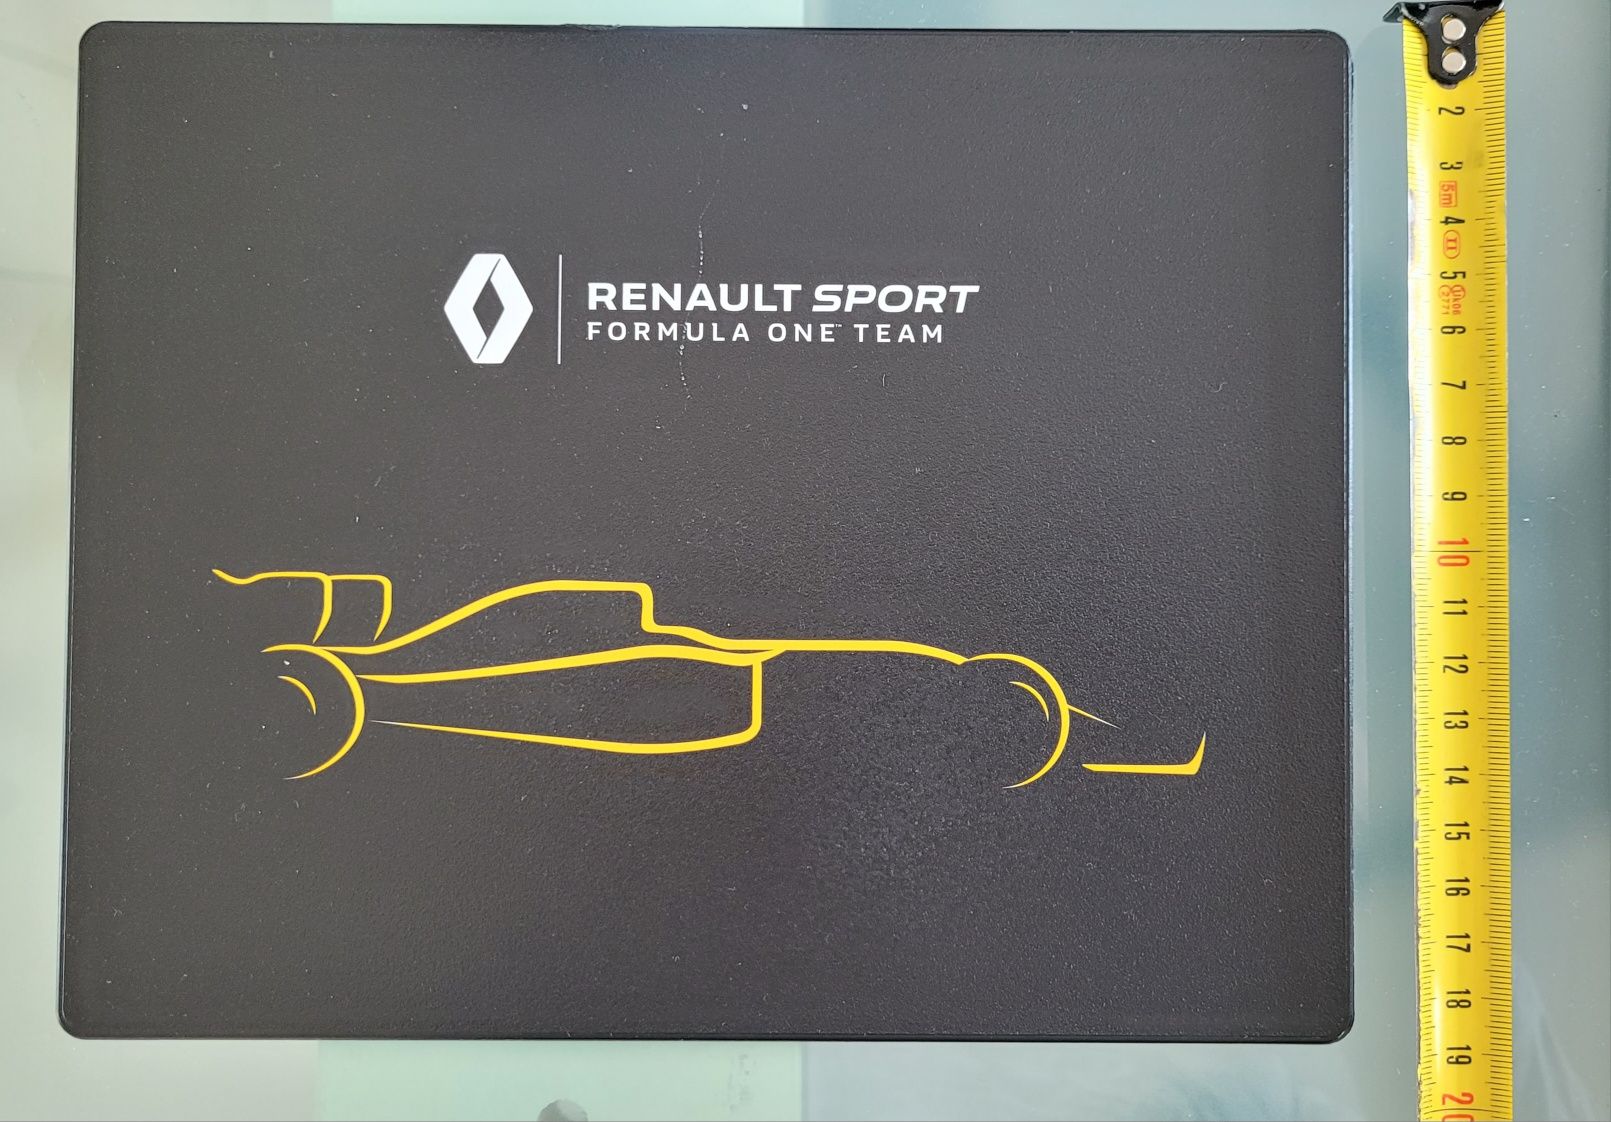 Podkładka pod mysz optyczną Renault Sport F1